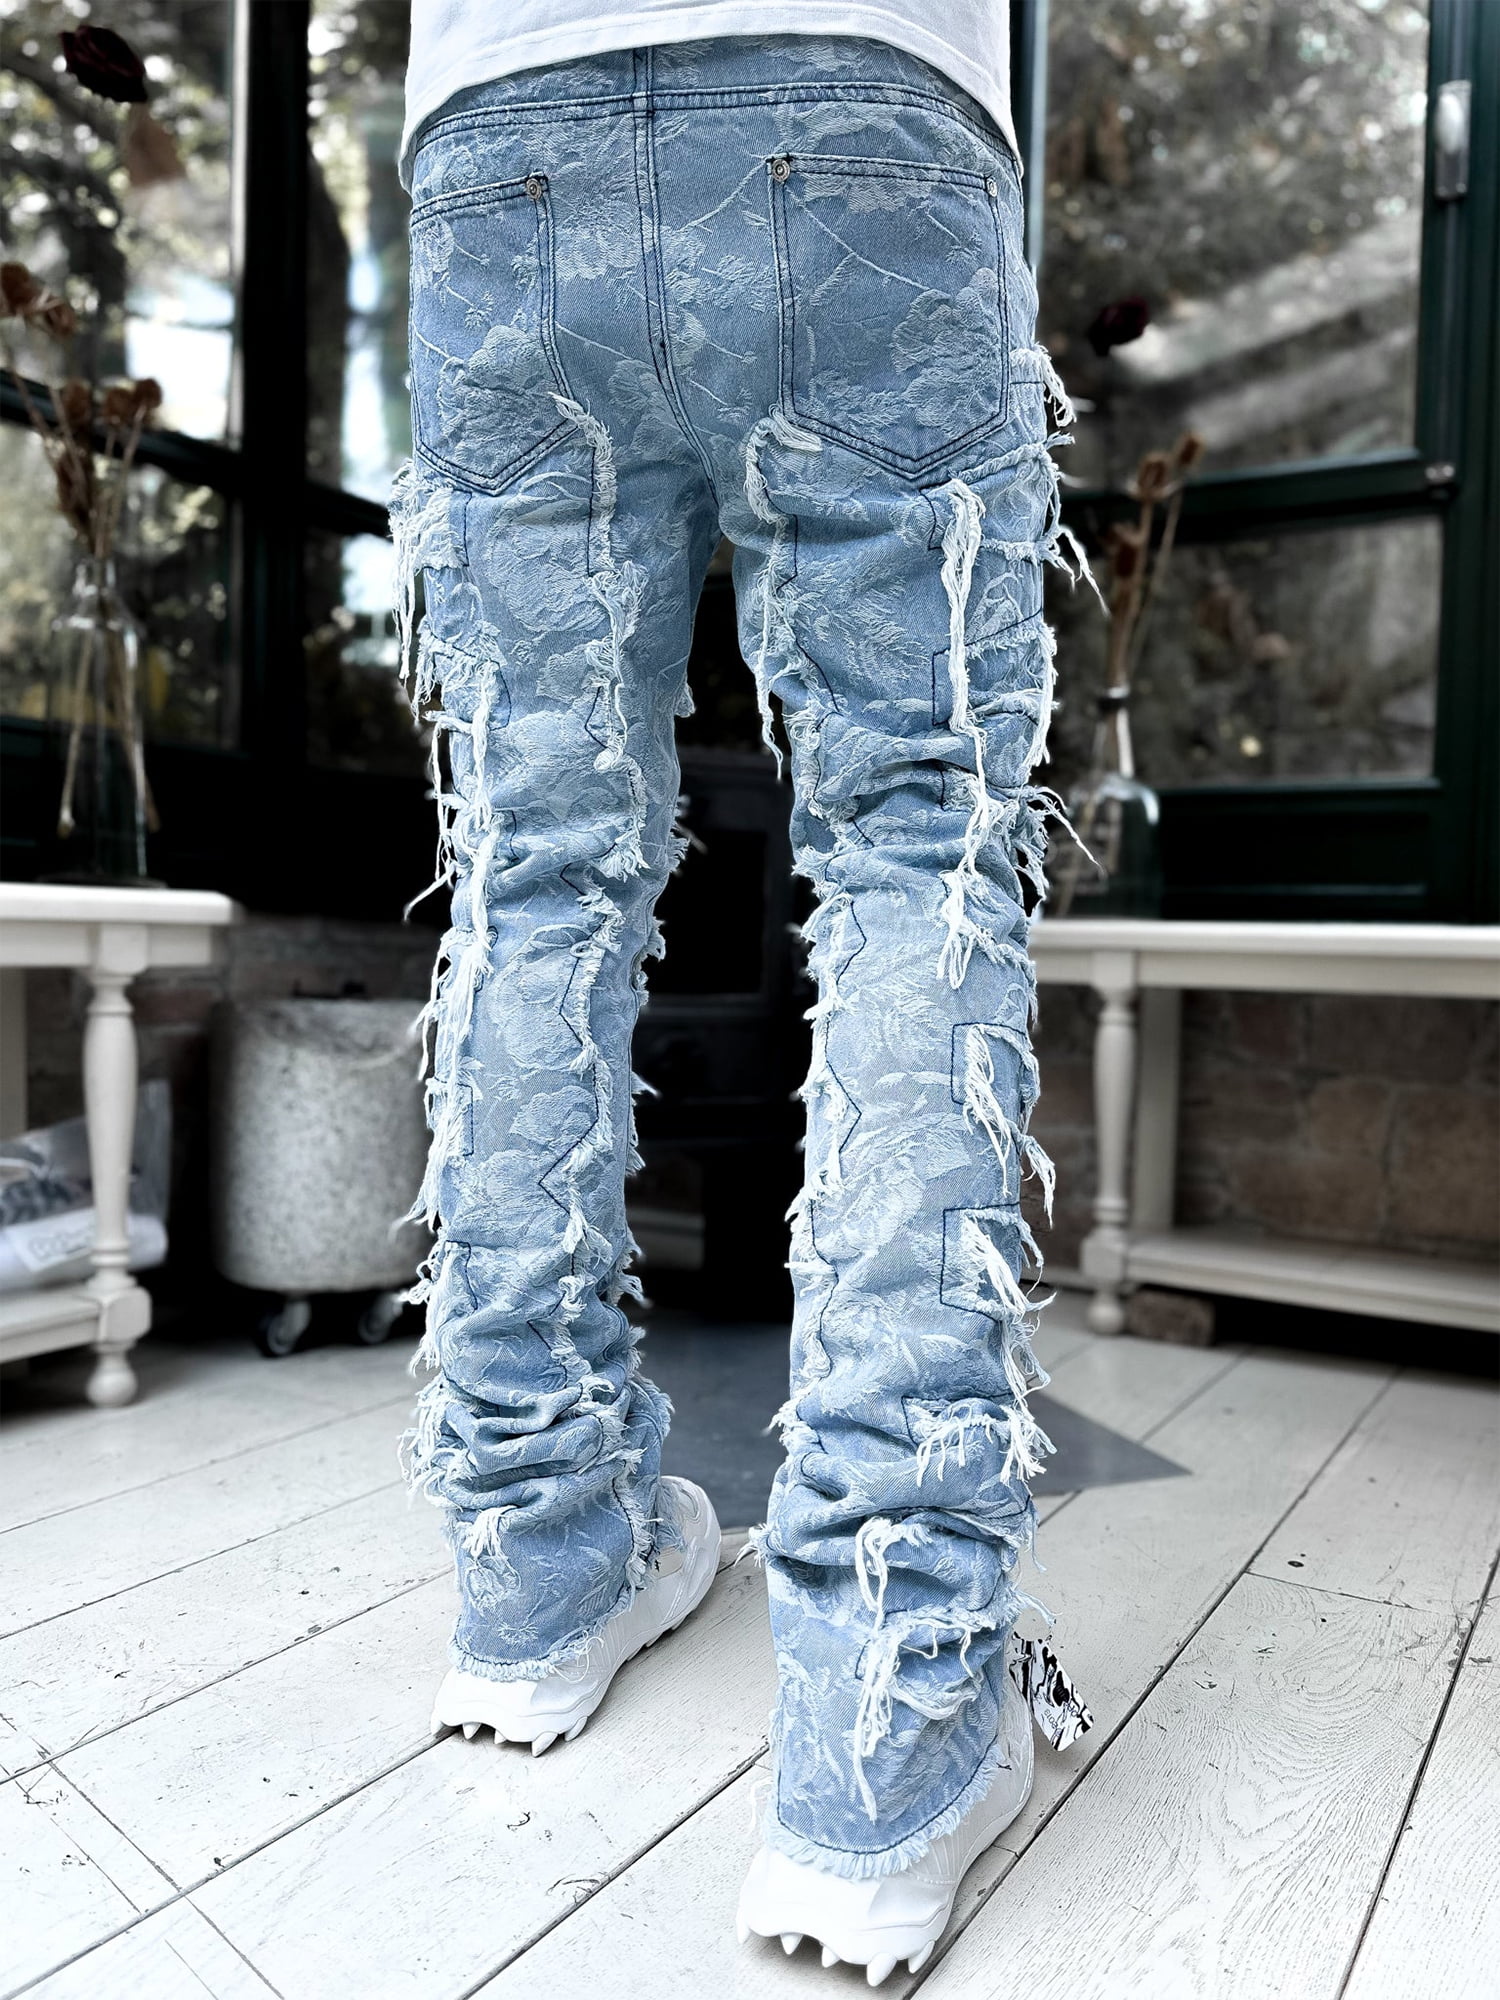 42 44 Plus Size Jeans Men Denim Pants Baggy Jeans Vintage Cargo Pants Loose  Fashion Causal